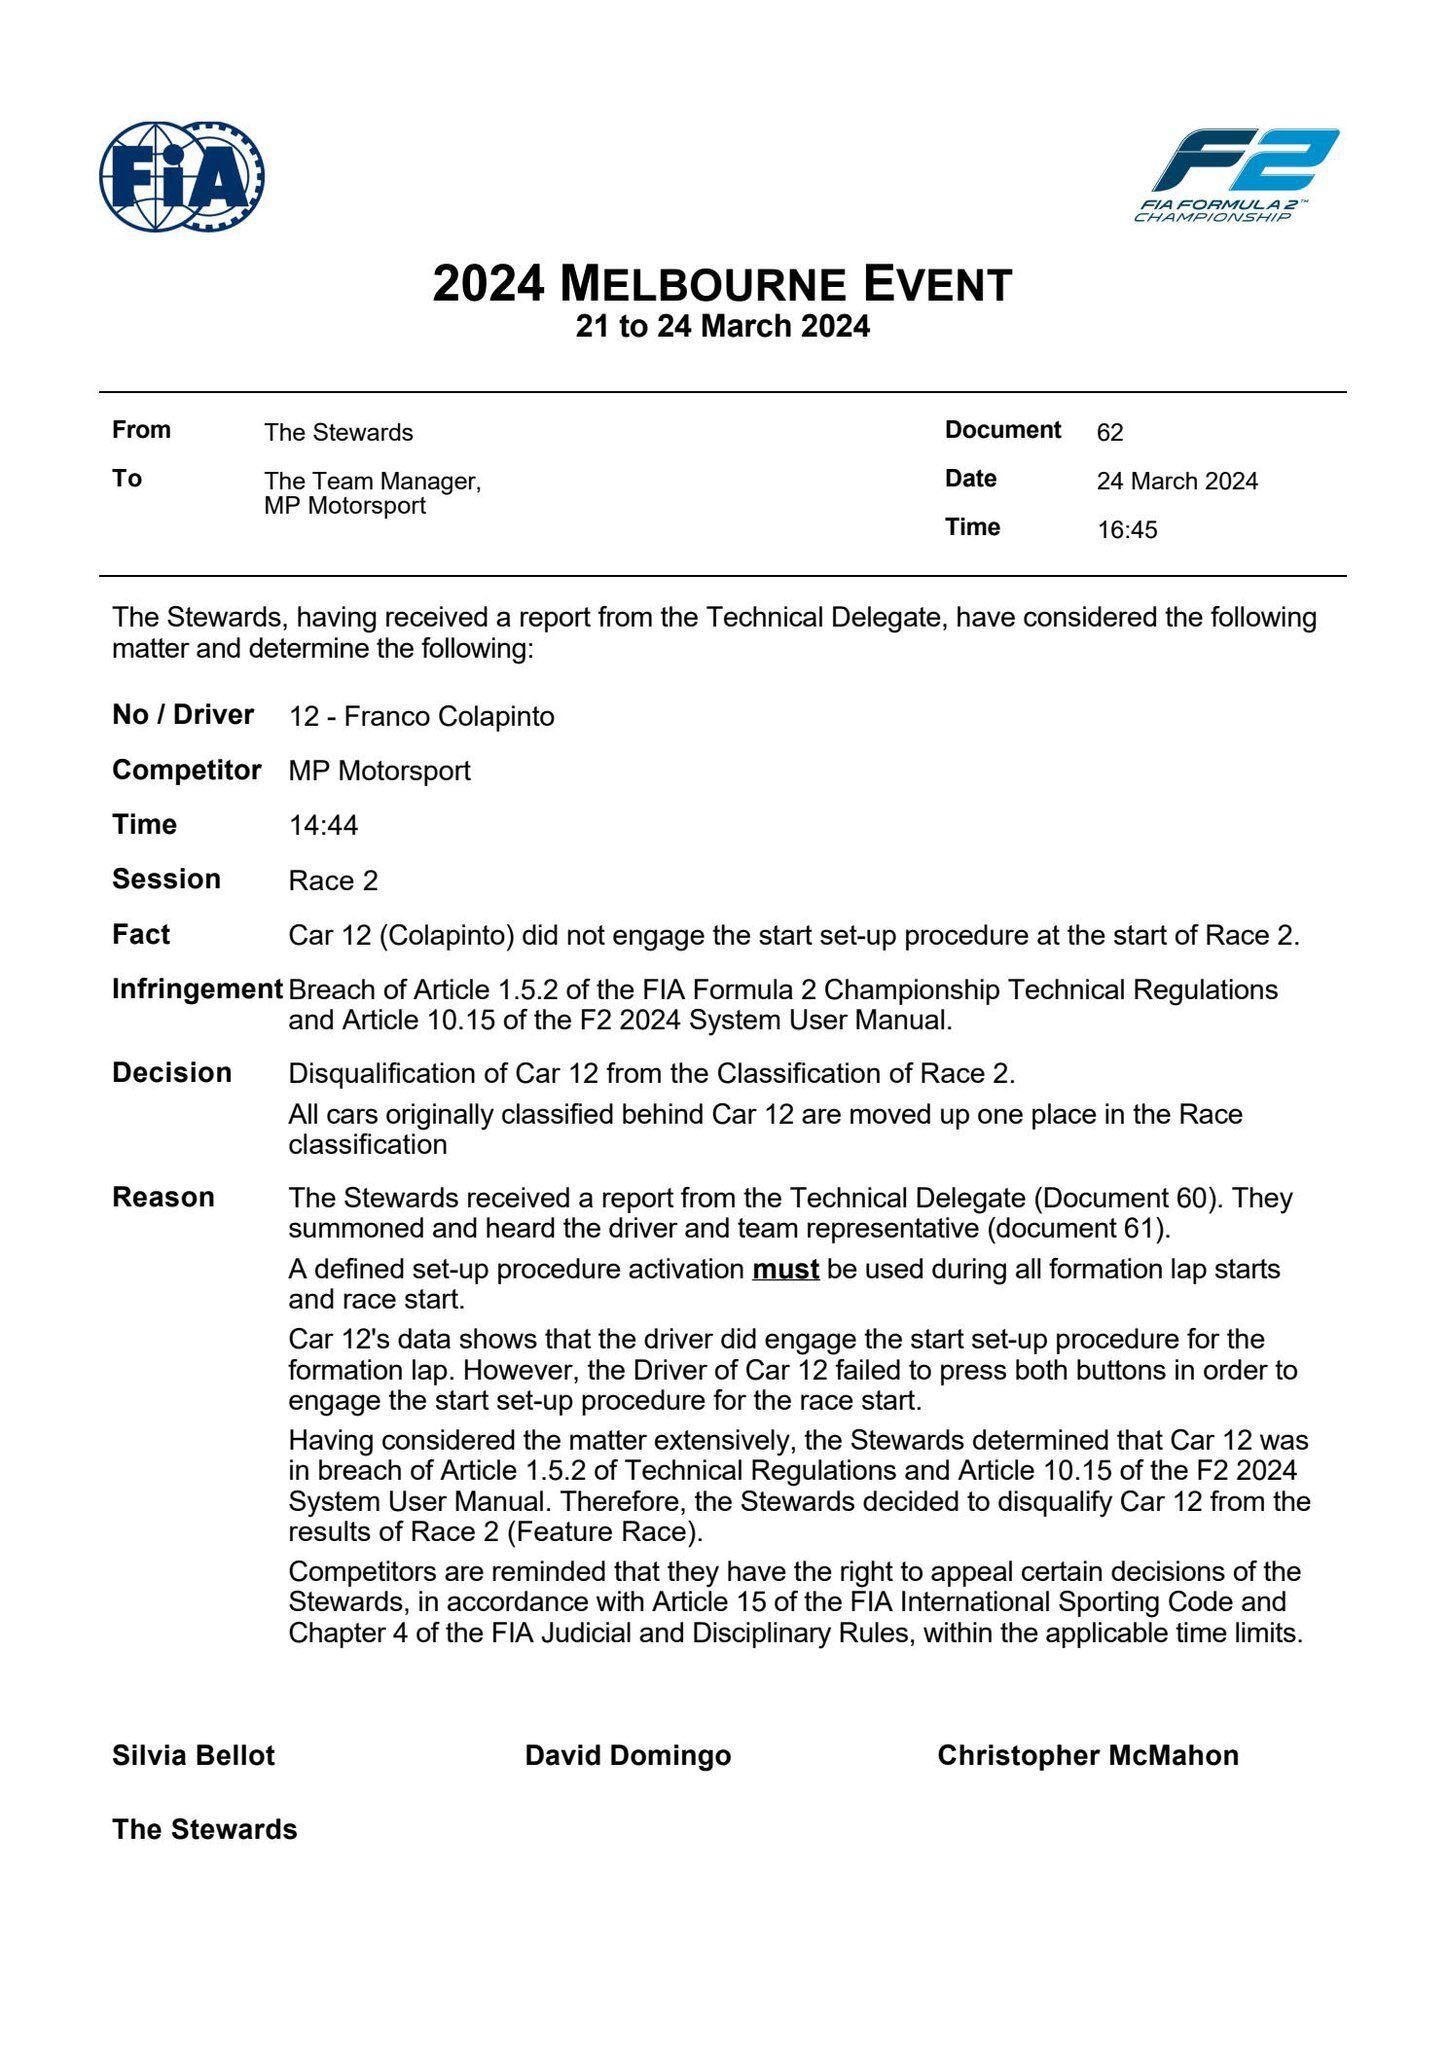 El anuncio de la Fórmula 2 con la desclasificación de Colapinto (@Formula2)